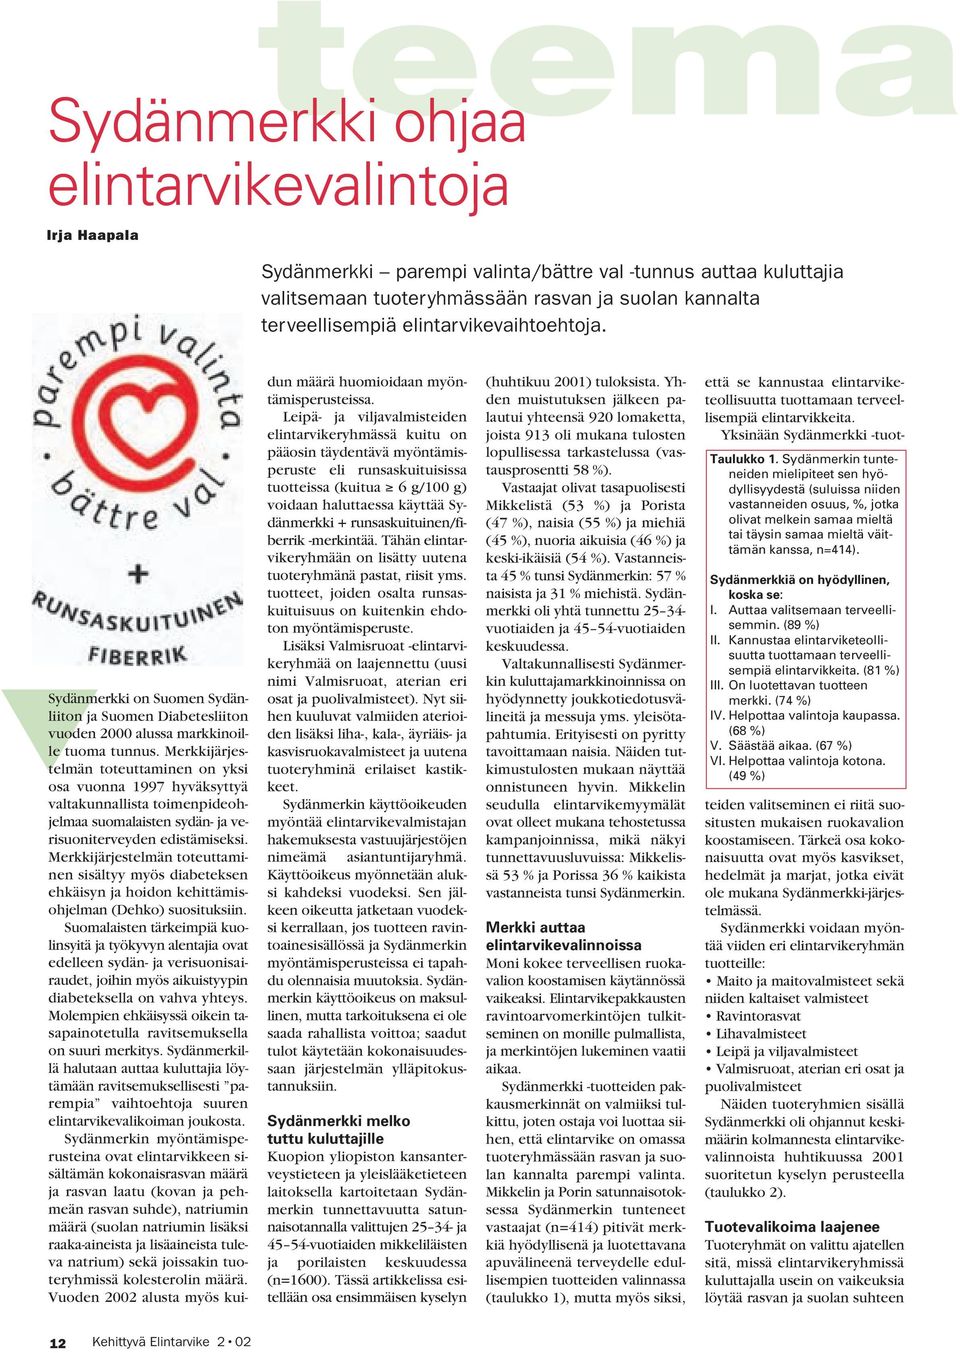 Merkkijärjestelmän toteuttaminen on yksi osa vuonna 1997 hyväksyttyä valtakunnallista toimenpideohjelmaa suomalaisten sydän- ja verisuoniterveyden edistämiseksi.